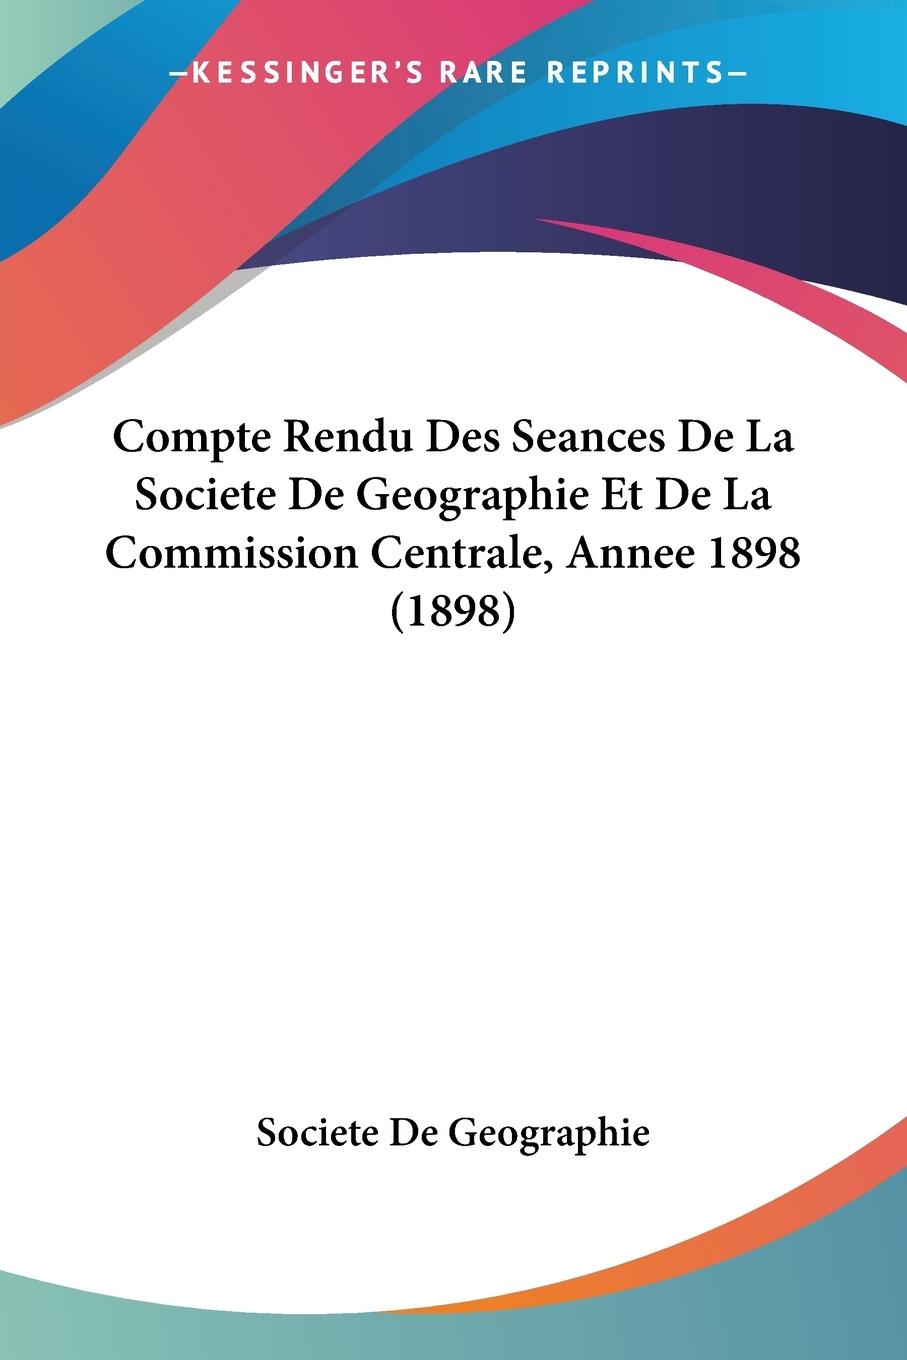 Compte Rendu Des Seances De La Societe De Geographie Et De La Commission Centrale, Annee 1898 (1898)